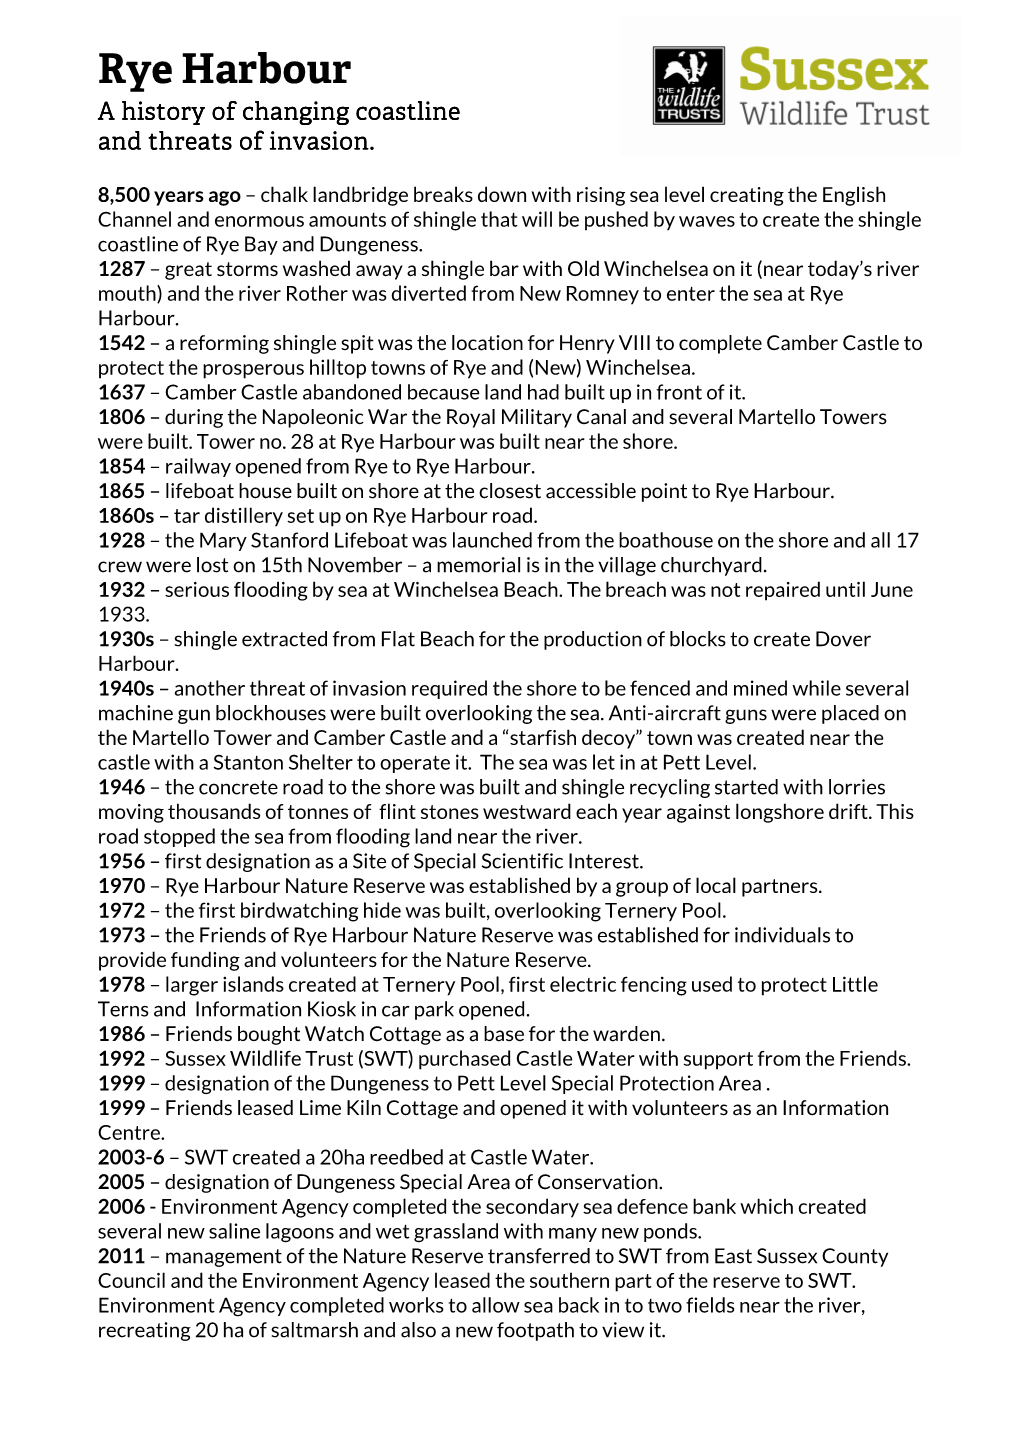 Rye Harbour Timeline